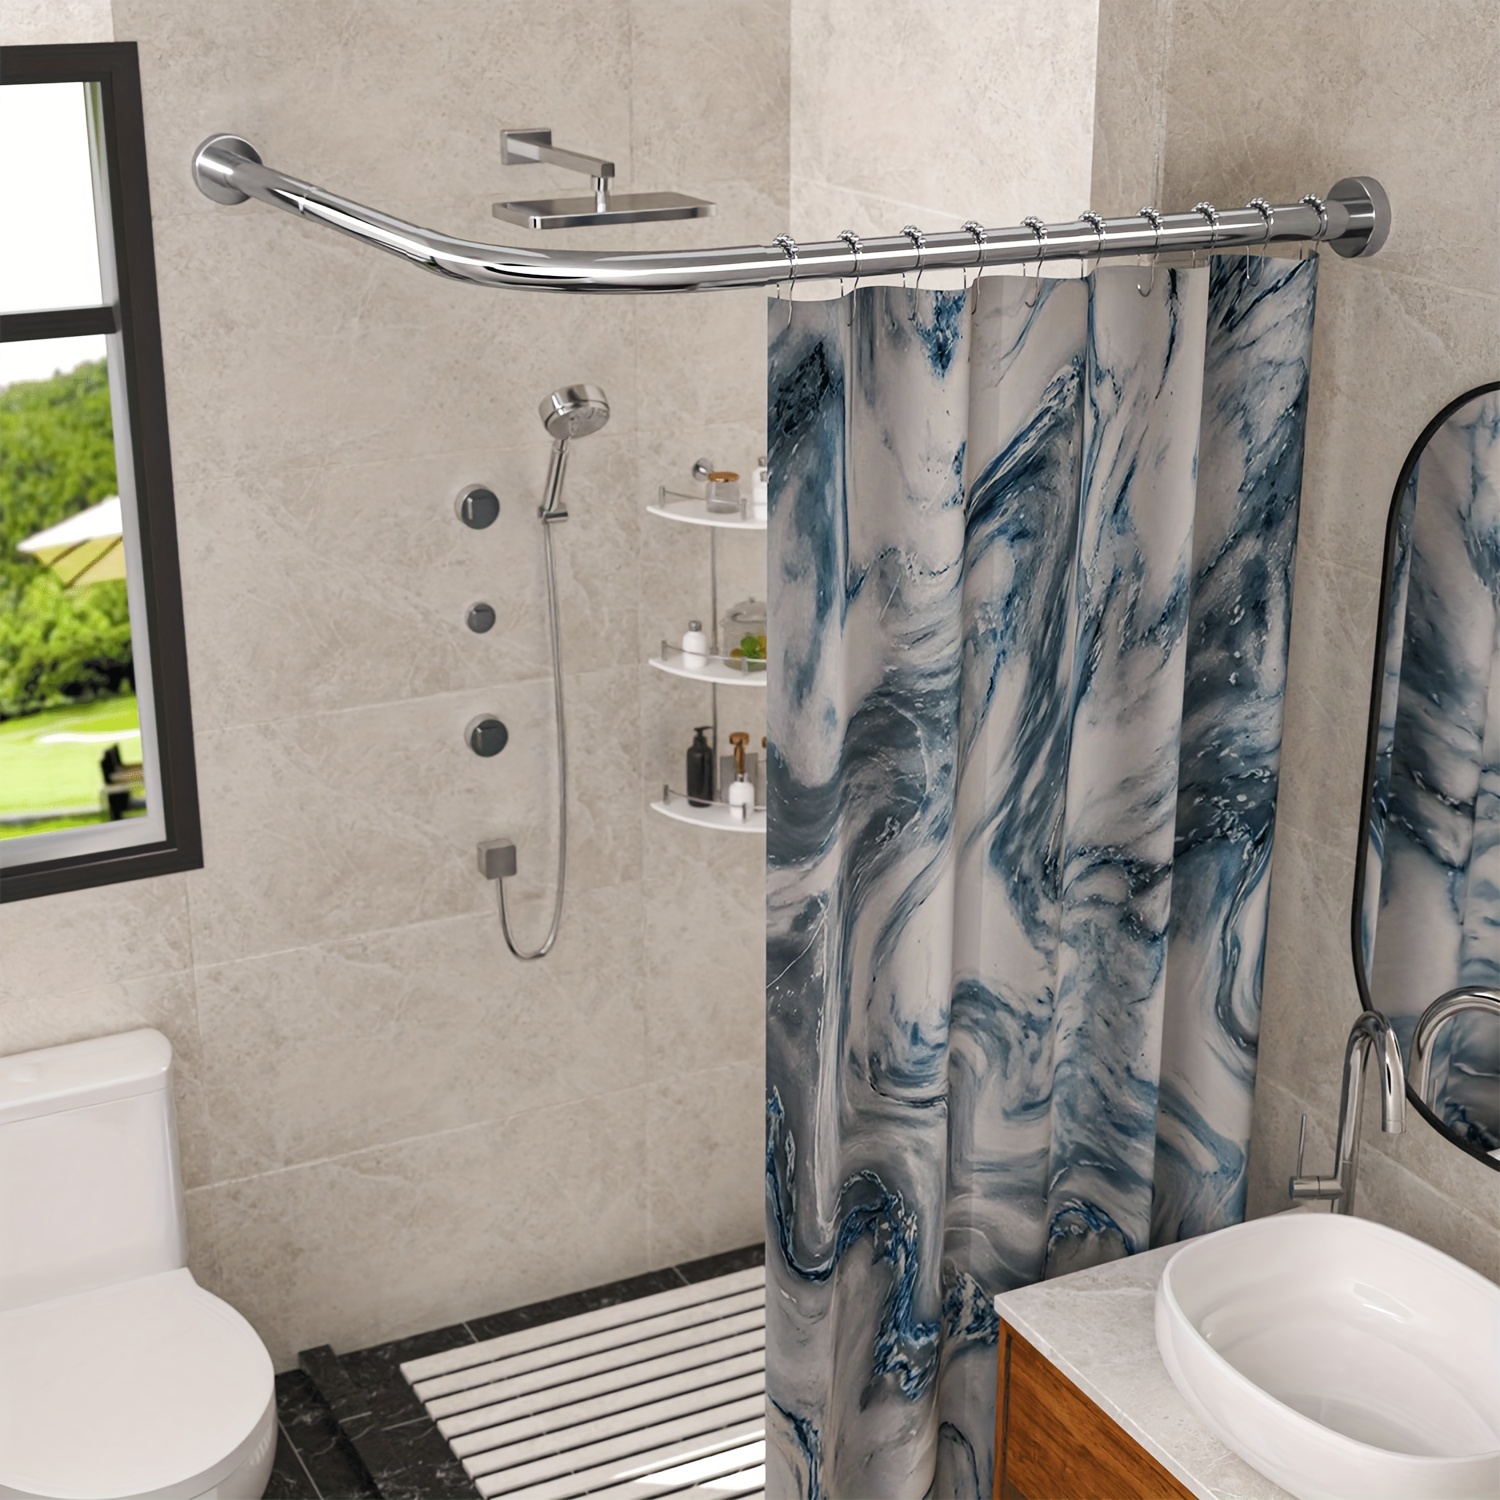 SUS 304 - Cesta de ducha de acero inoxidable para baño, esquina de baño,  cesta de ducha triangular grande de 2 niveles, montaje en pared, pulido